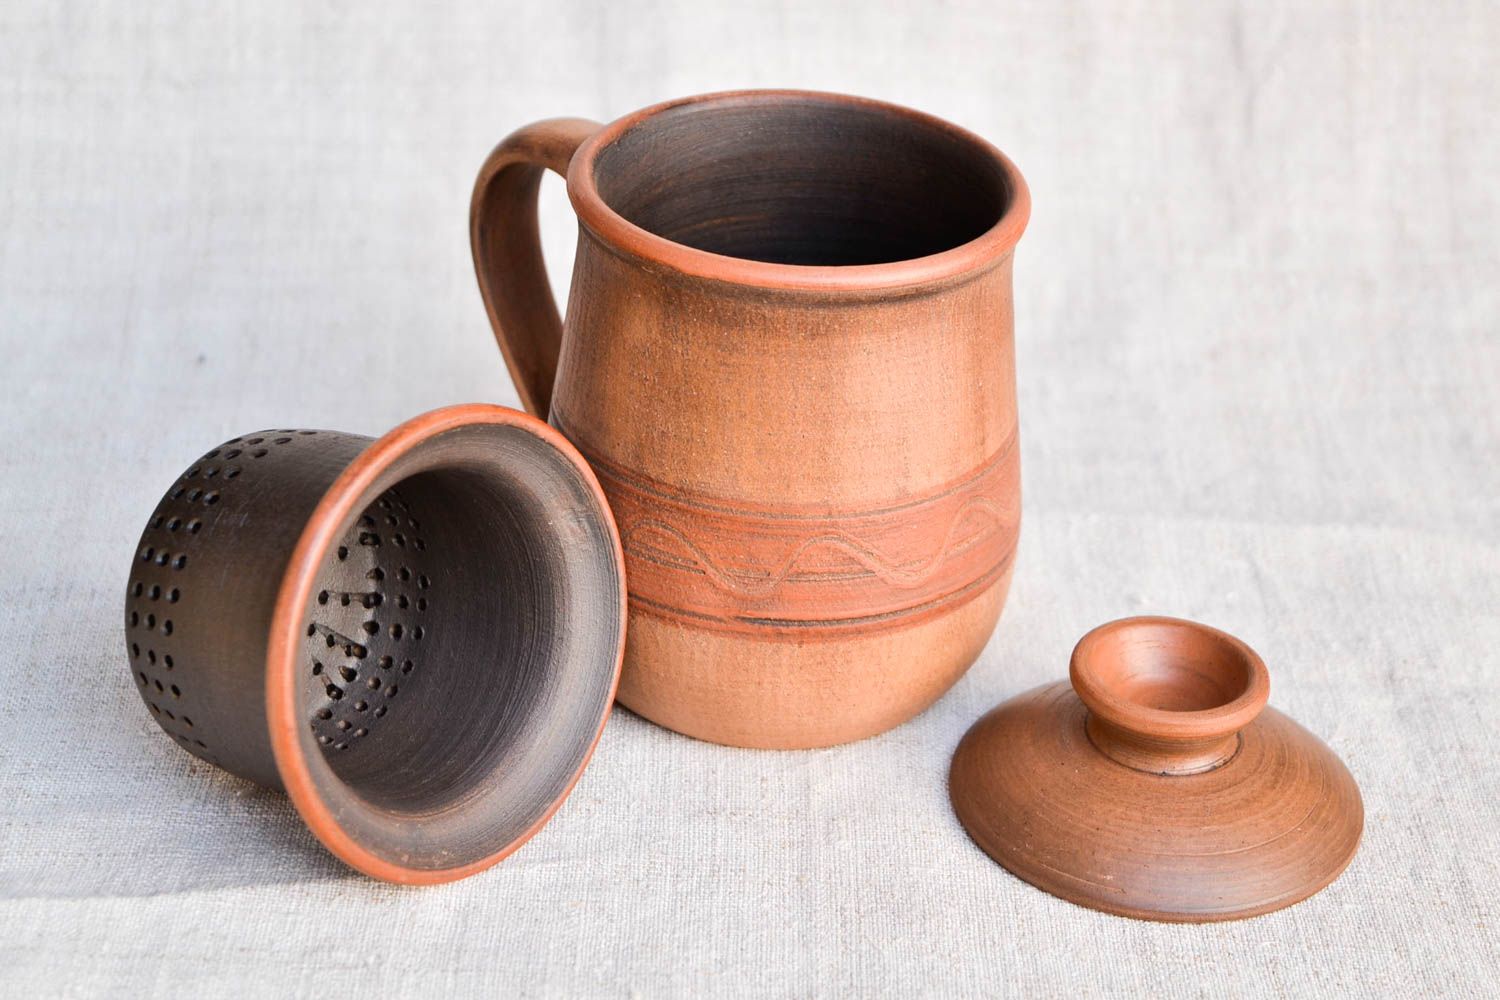 Küchen Dekor handgemachtes Geschirr Teekannen aus Ton Keramik Teekanne braun foto 3